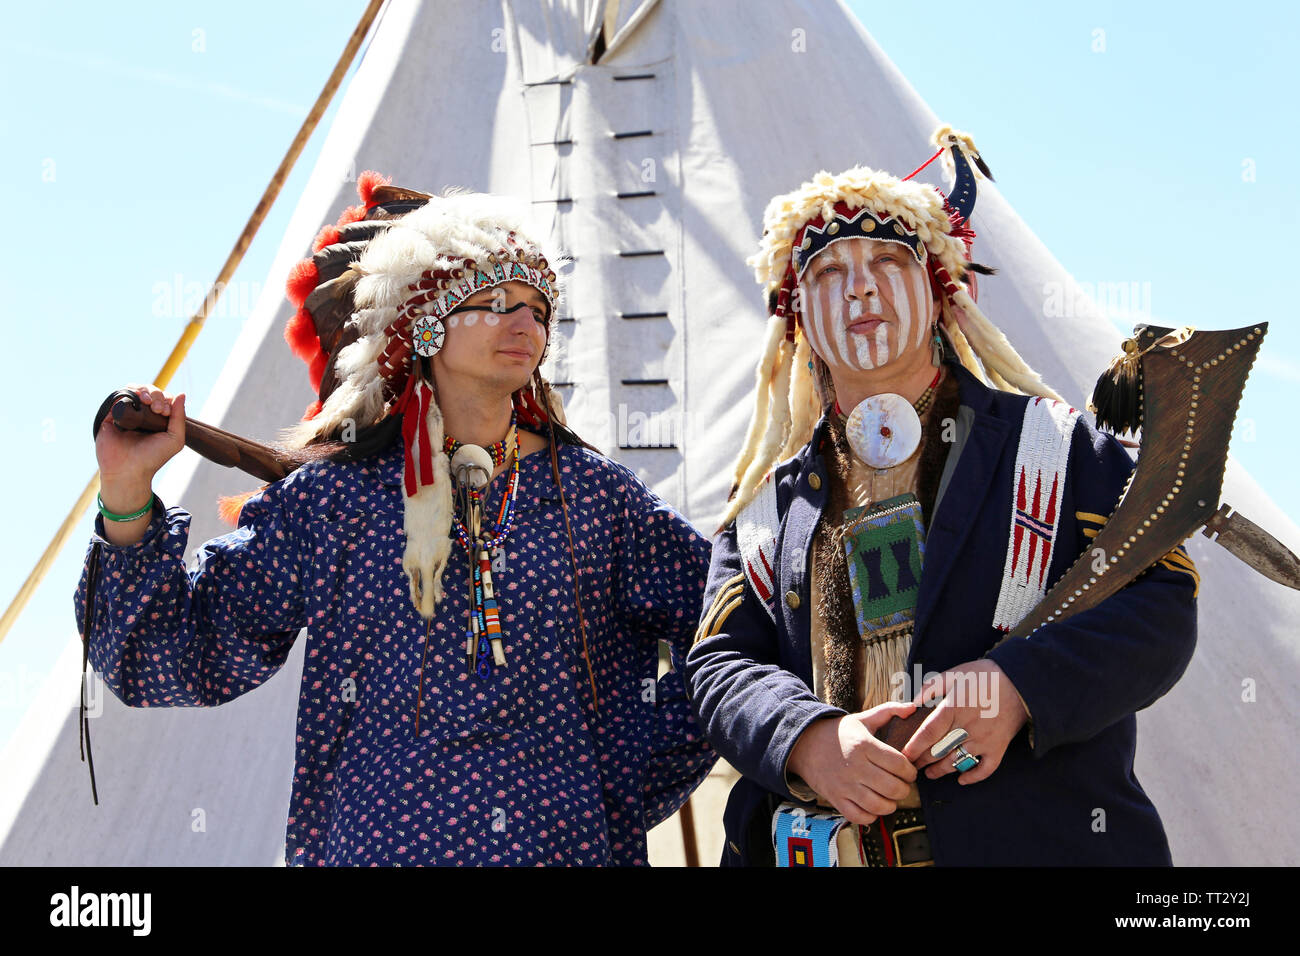 Indiani del Nord America stand con arma vicino a wigwam contro il cielo blu. La ricostruzione di native american life su Mosca festival storici Foto Stock